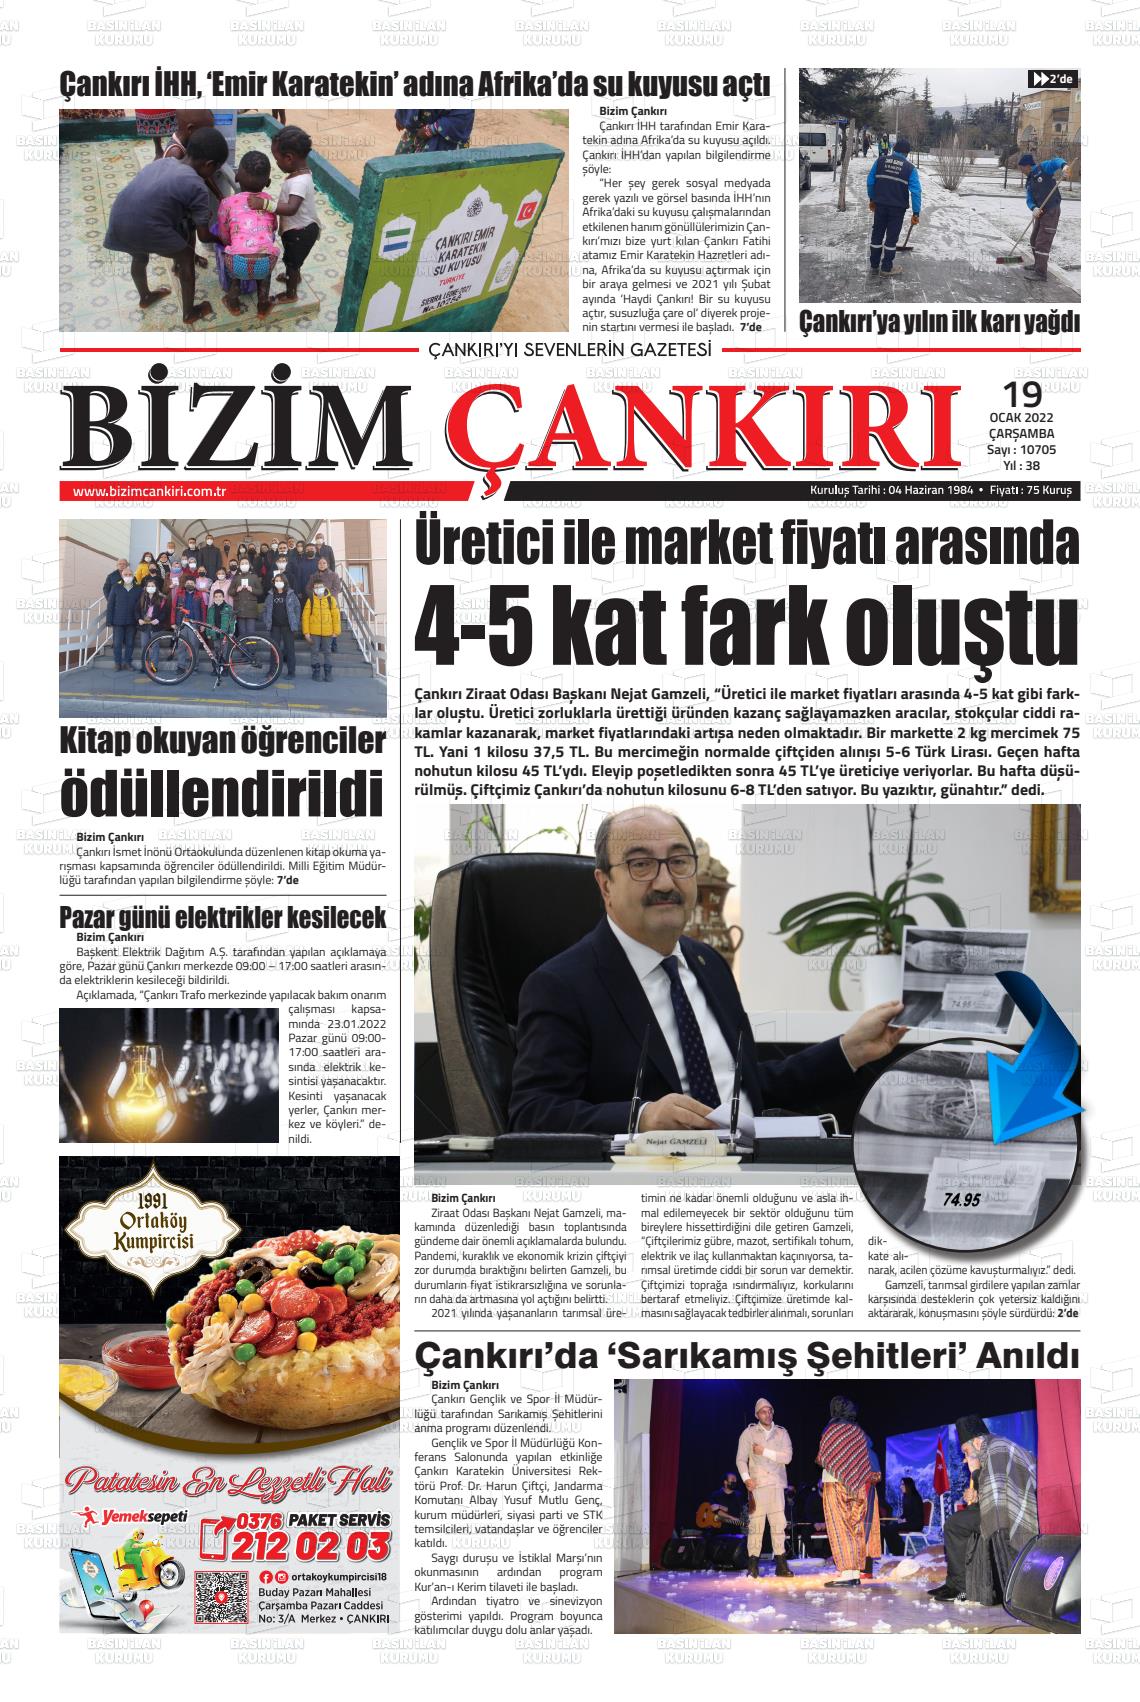 19 Ocak 2022 Bizim Çankırı Gazete Manşeti